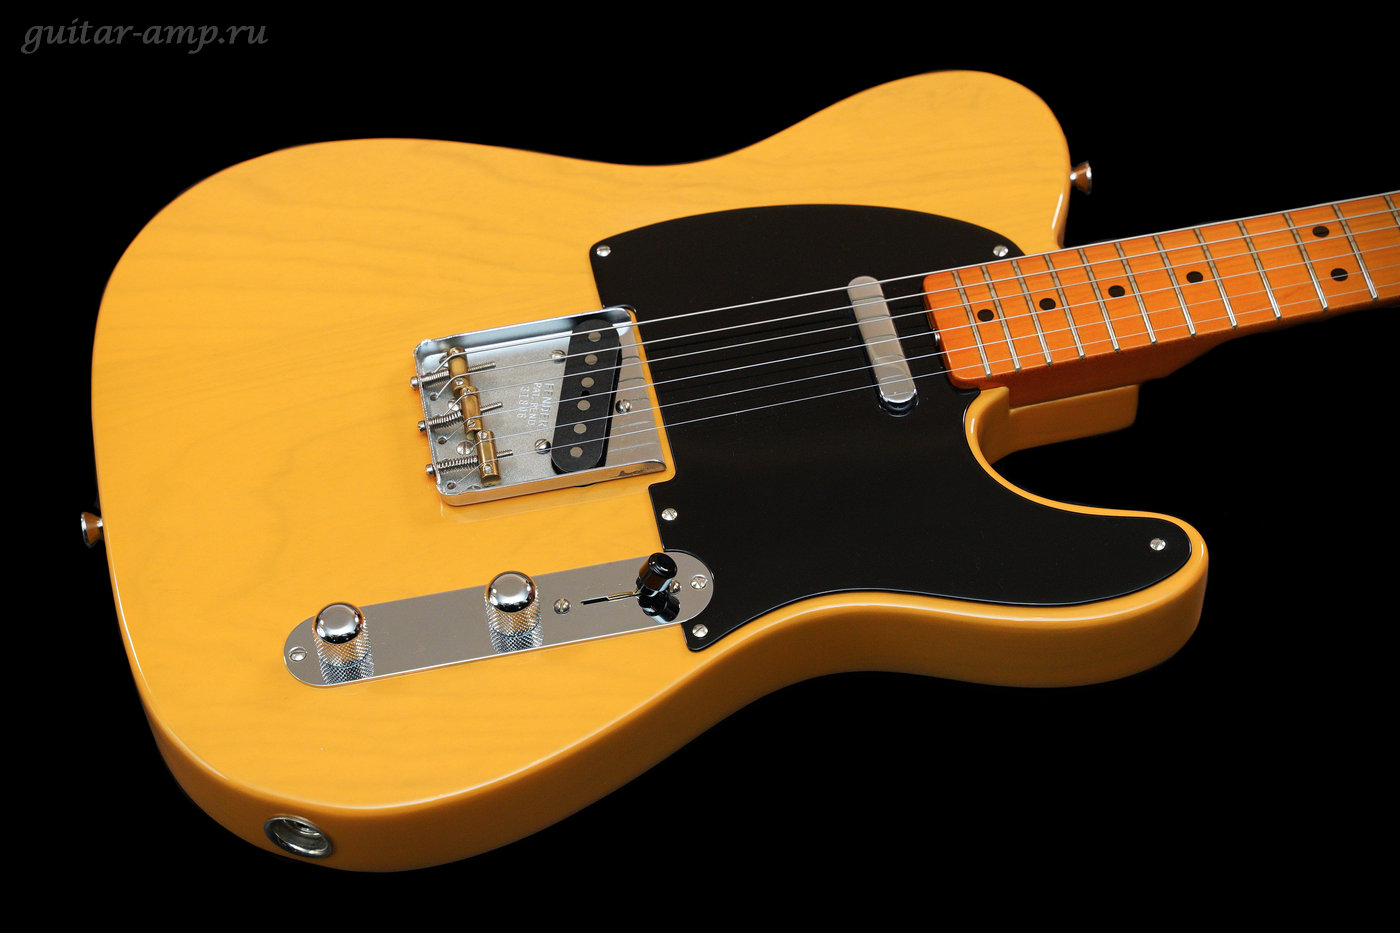 Fender American Vintage Telecaster 1952 Reissue Butterscotch Blonde 1998 001_garx1400.jpg